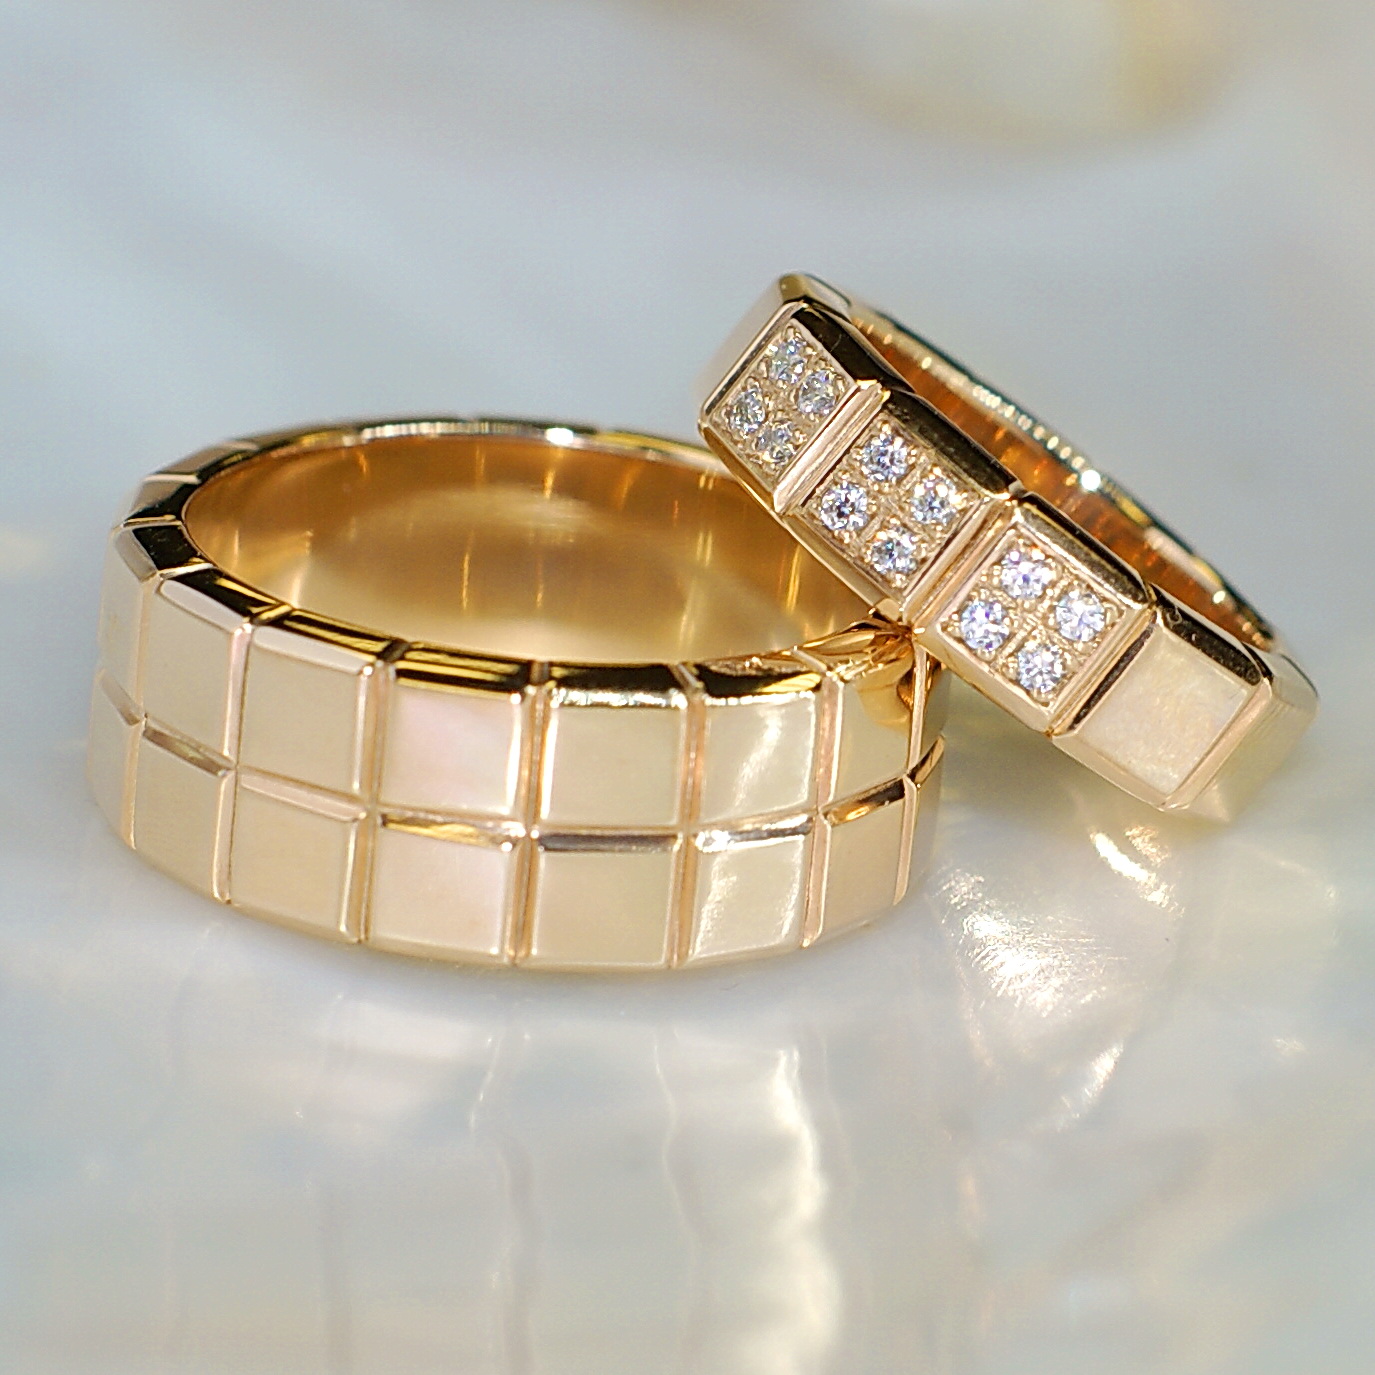 Эксклюзивные обручальные кольца Кубики с бриллиантами (Вес пары: 20 гр.)